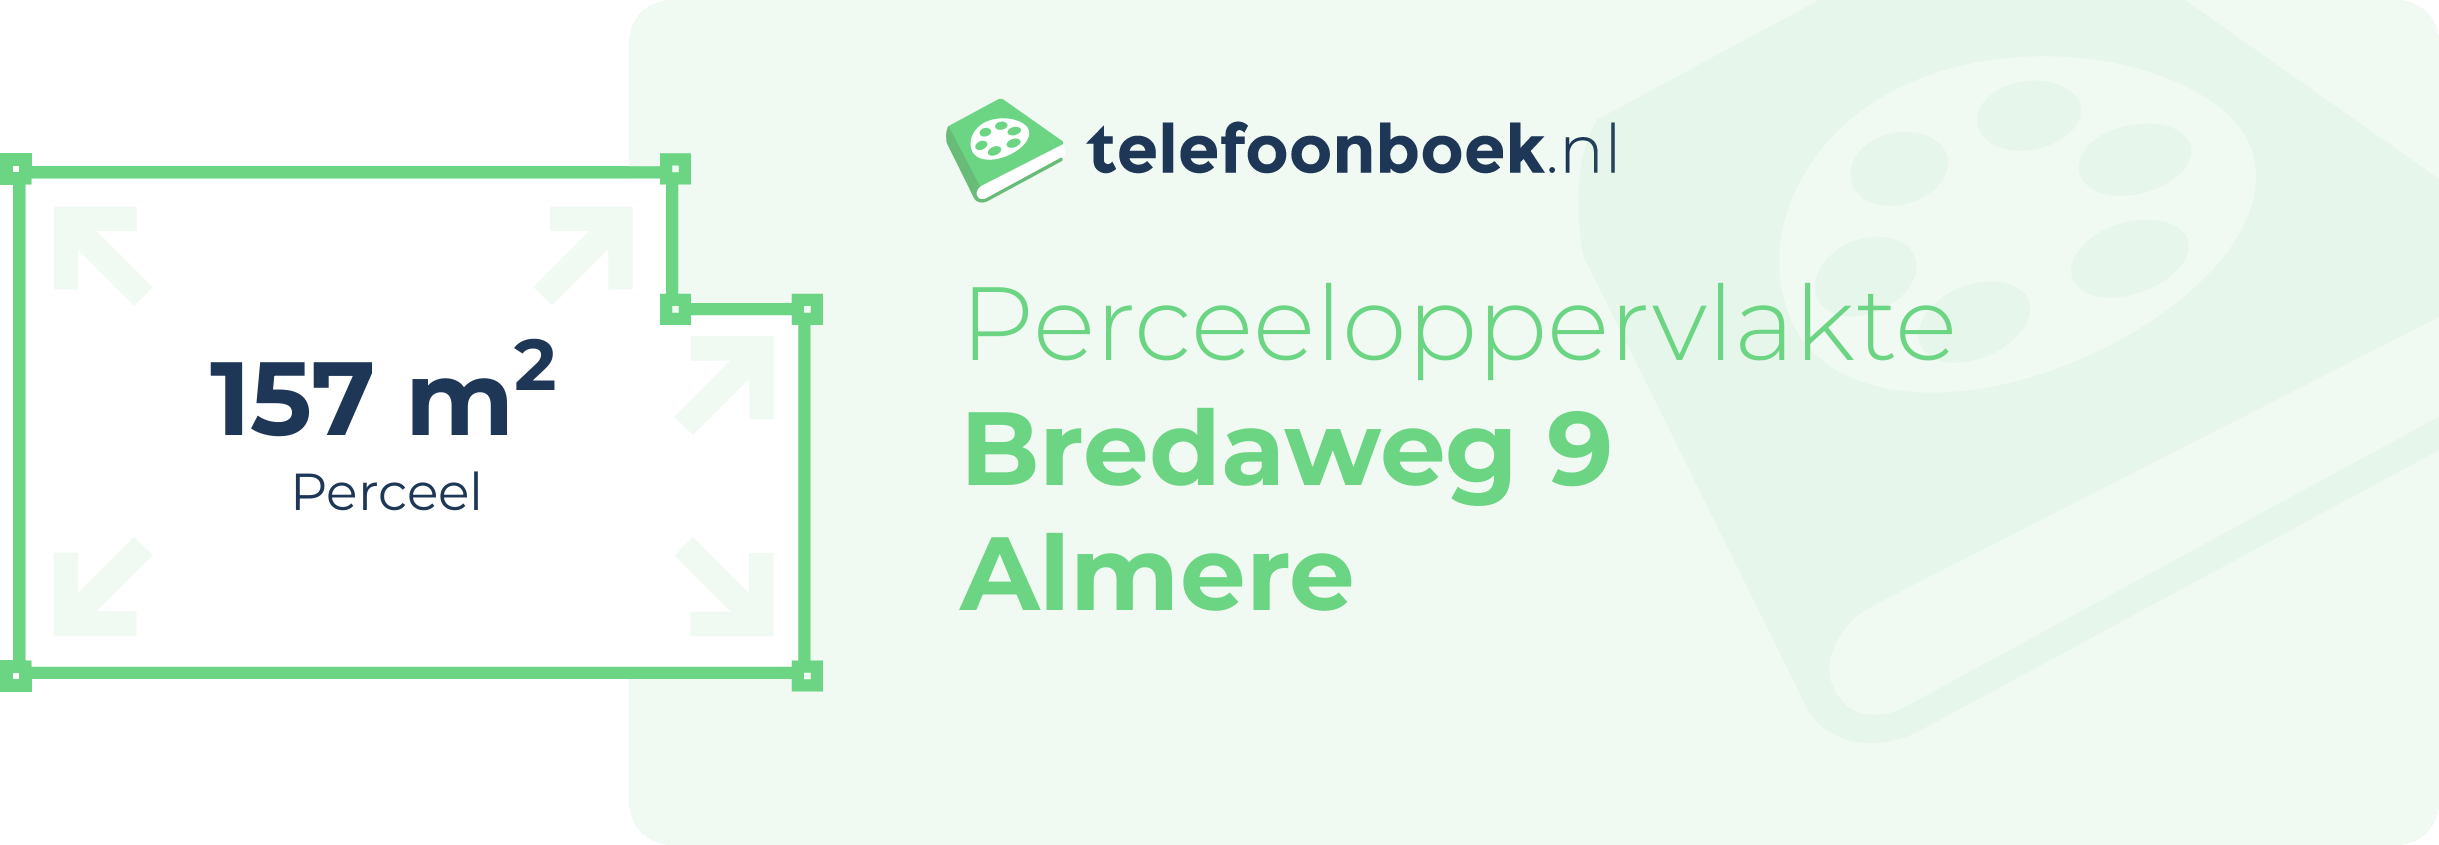 Perceeloppervlakte Bredaweg 9 Almere